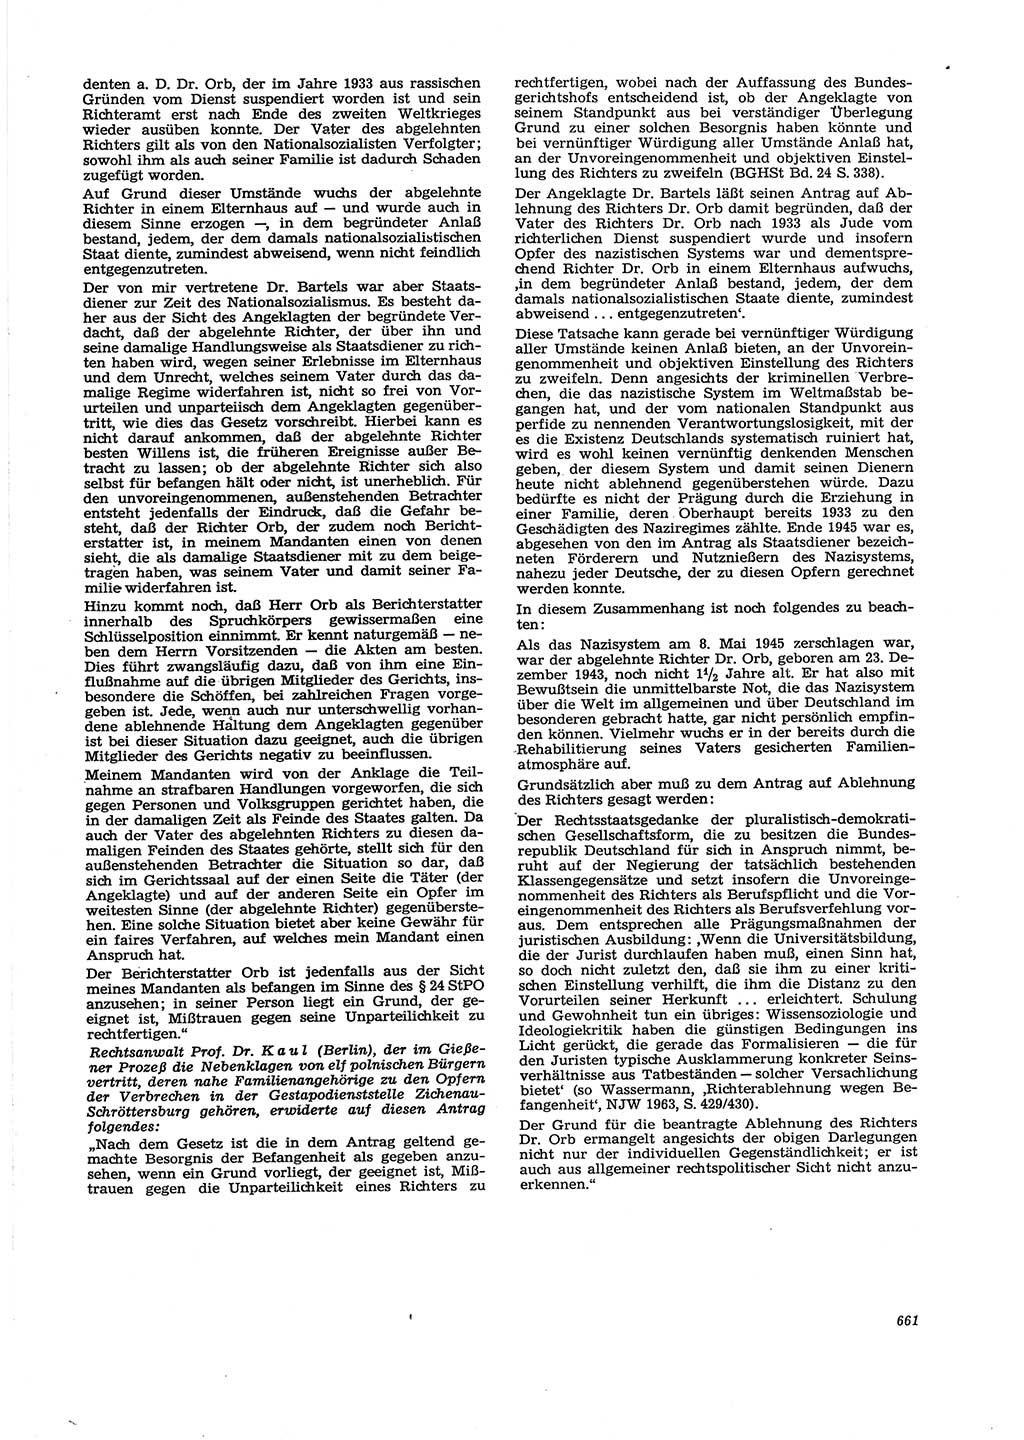 Neue Justiz (NJ), Zeitschrift für Recht und Rechtswissenschaft [Deutsche Demokratische Republik (DDR)], 29. Jahrgang 1975, Seite 661 (NJ DDR 1975, S. 661)